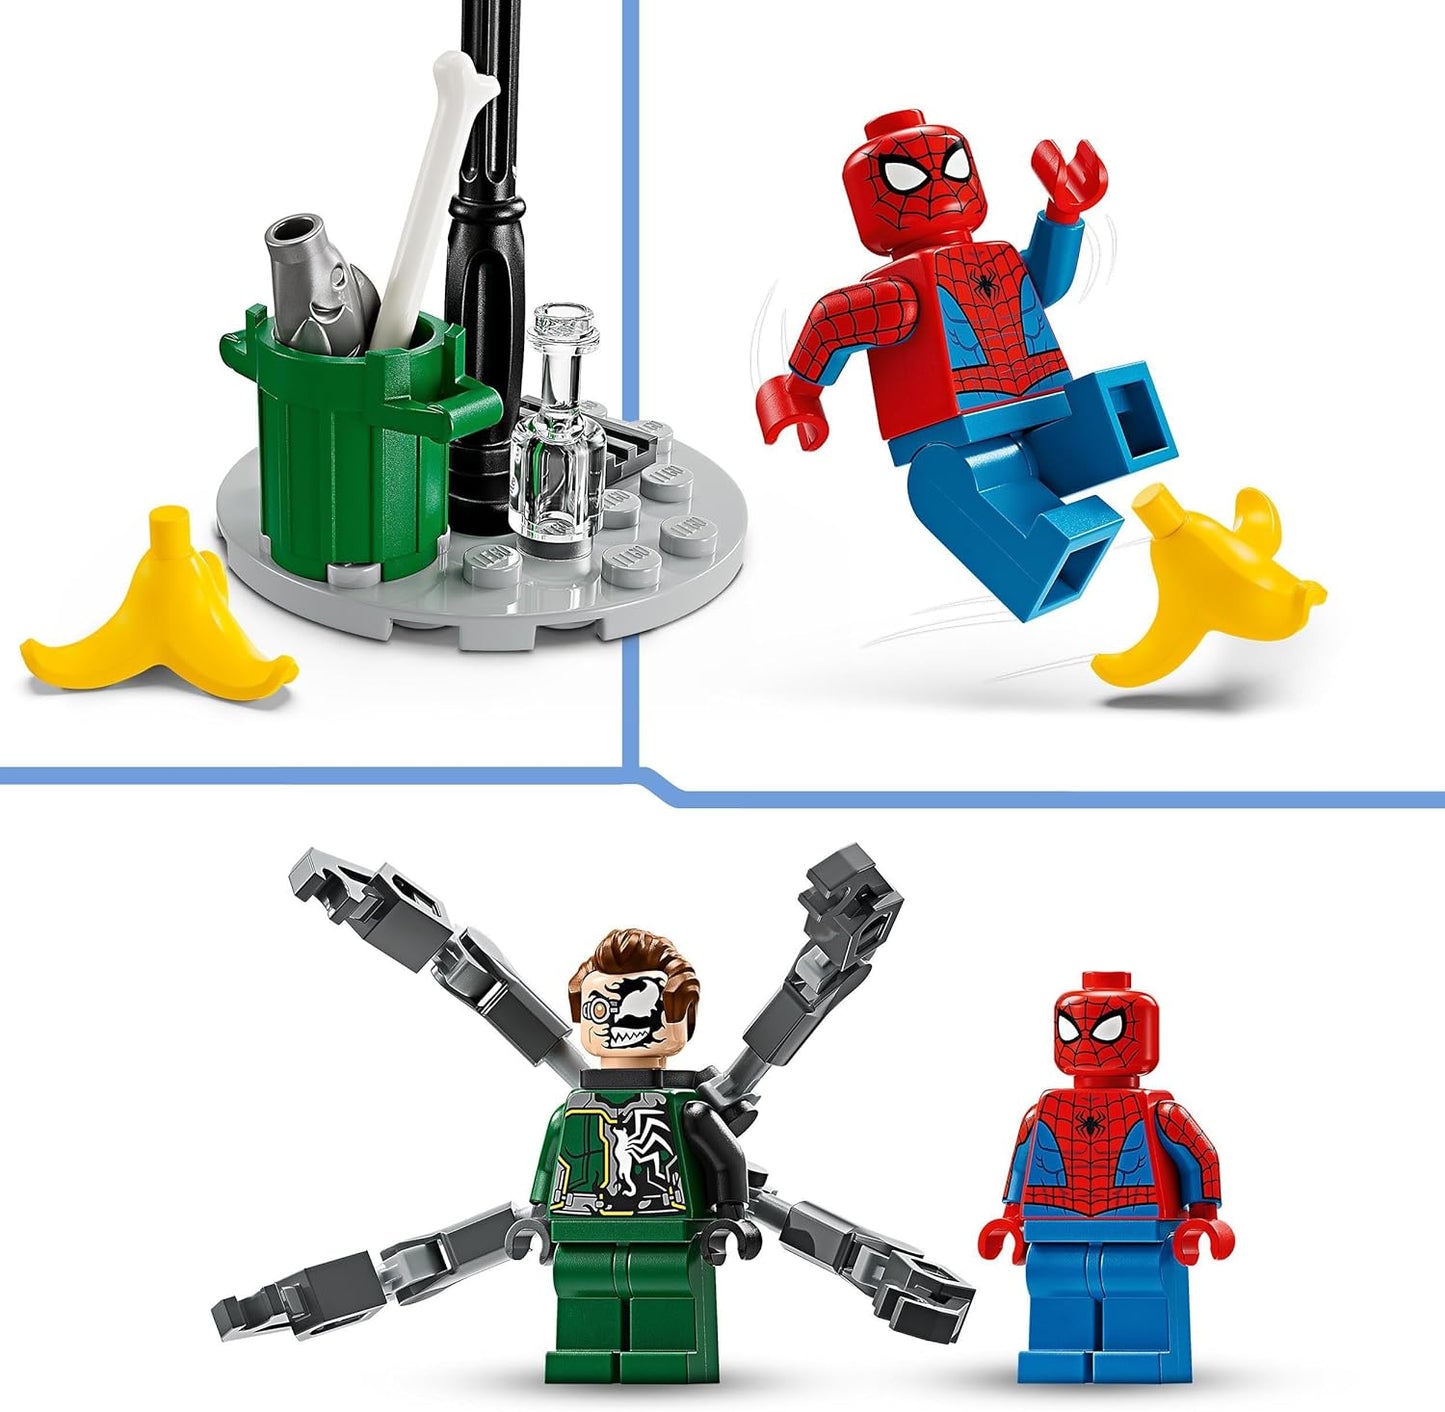 LEGO Marvel Motorcycle Chase: Spider-Man vs. Doc Ock, brinquedo de construção de motocicleta para crianças, meninos e meninas a partir de 6 anos com Stud Blasters, Web Shooters e 2 minifiguras, incluindo. Aranha, presentes de super-herói 76275